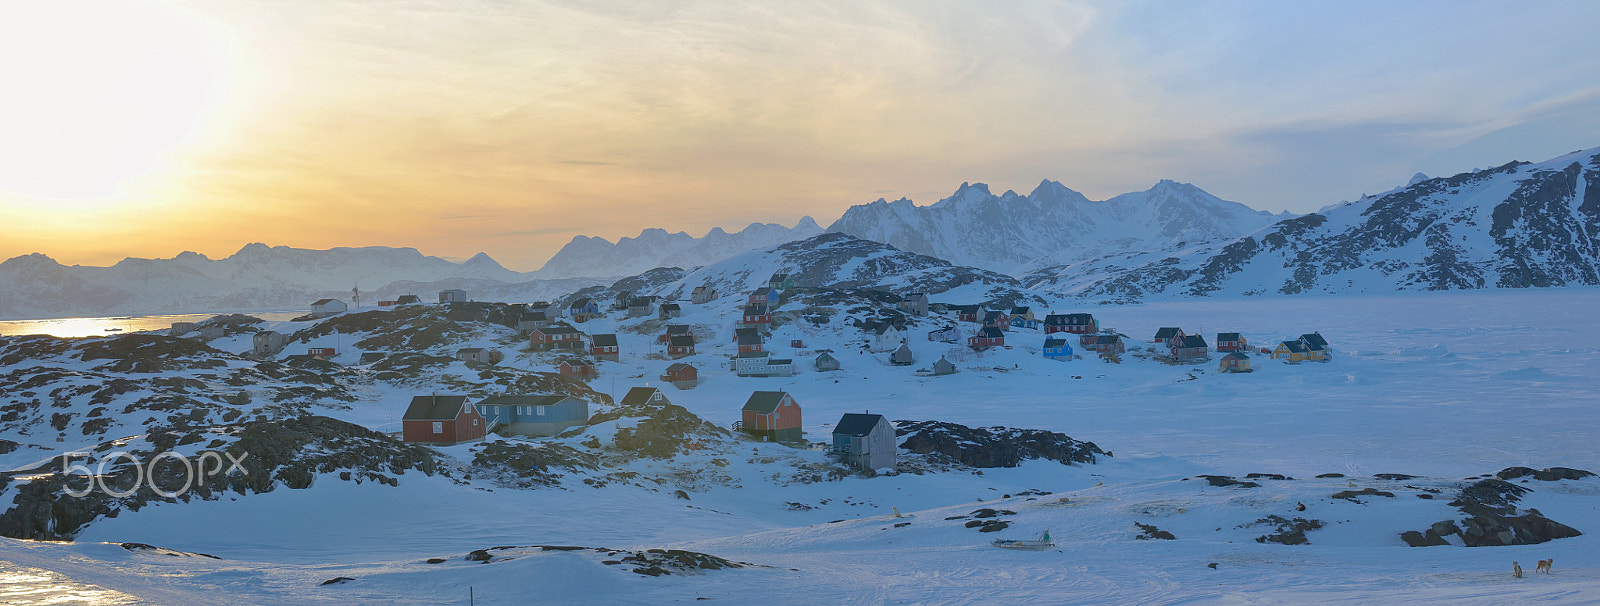 Nikon D600 + AF Zoom-Nikkor 80-200mm f/4.5-5.6D sample photo. Greenland landscape  in spring time photography